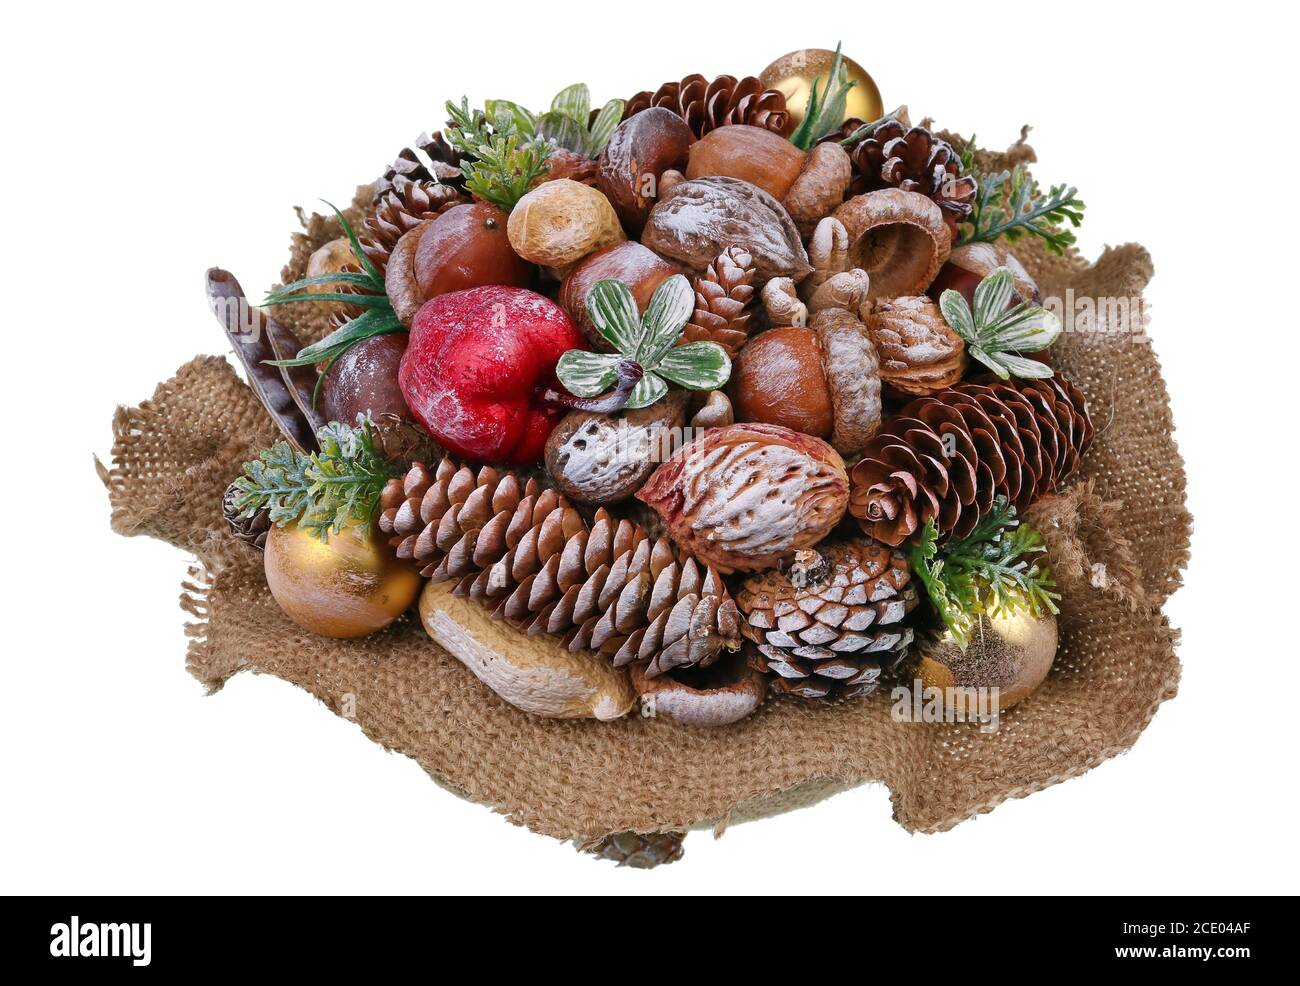 Weihnachten hausgemachte Girlande aus natürlichen Waldobjekten - Kegel, Eicheln und Nüsse isoliert Makro Stockfoto